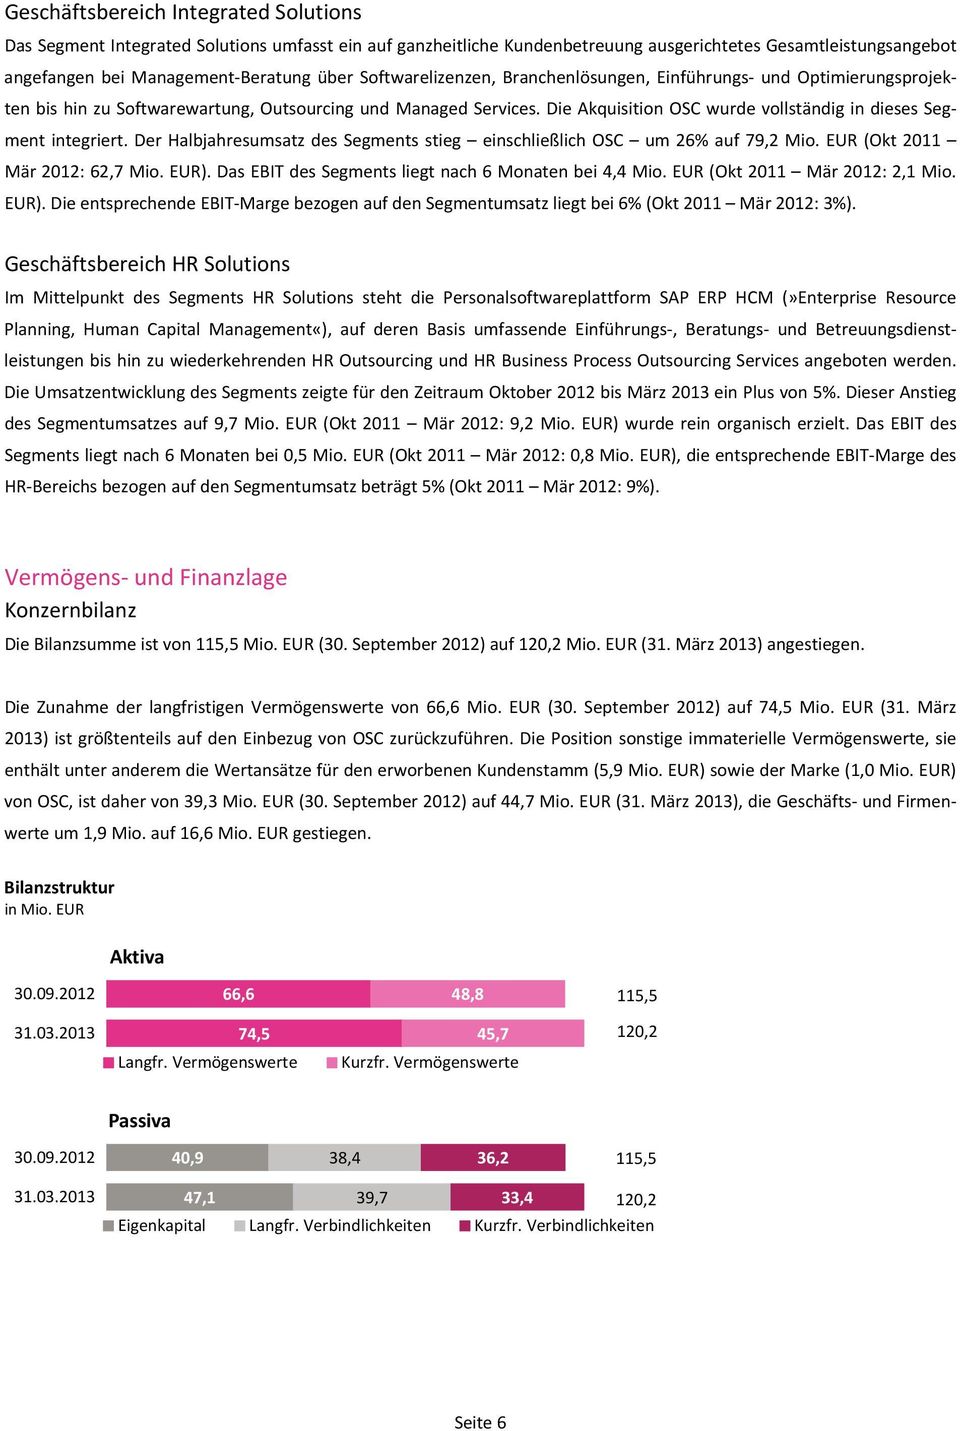 Die Akquisition OSC wurde vollständig in dieses Segment integriert. Der Halbjahresumsatz des Segments stieg einschließlich OSC um 26% auf 79,2 Mio. EUR (Okt 2011 Mär 2012: 62,7 Mio. EUR).